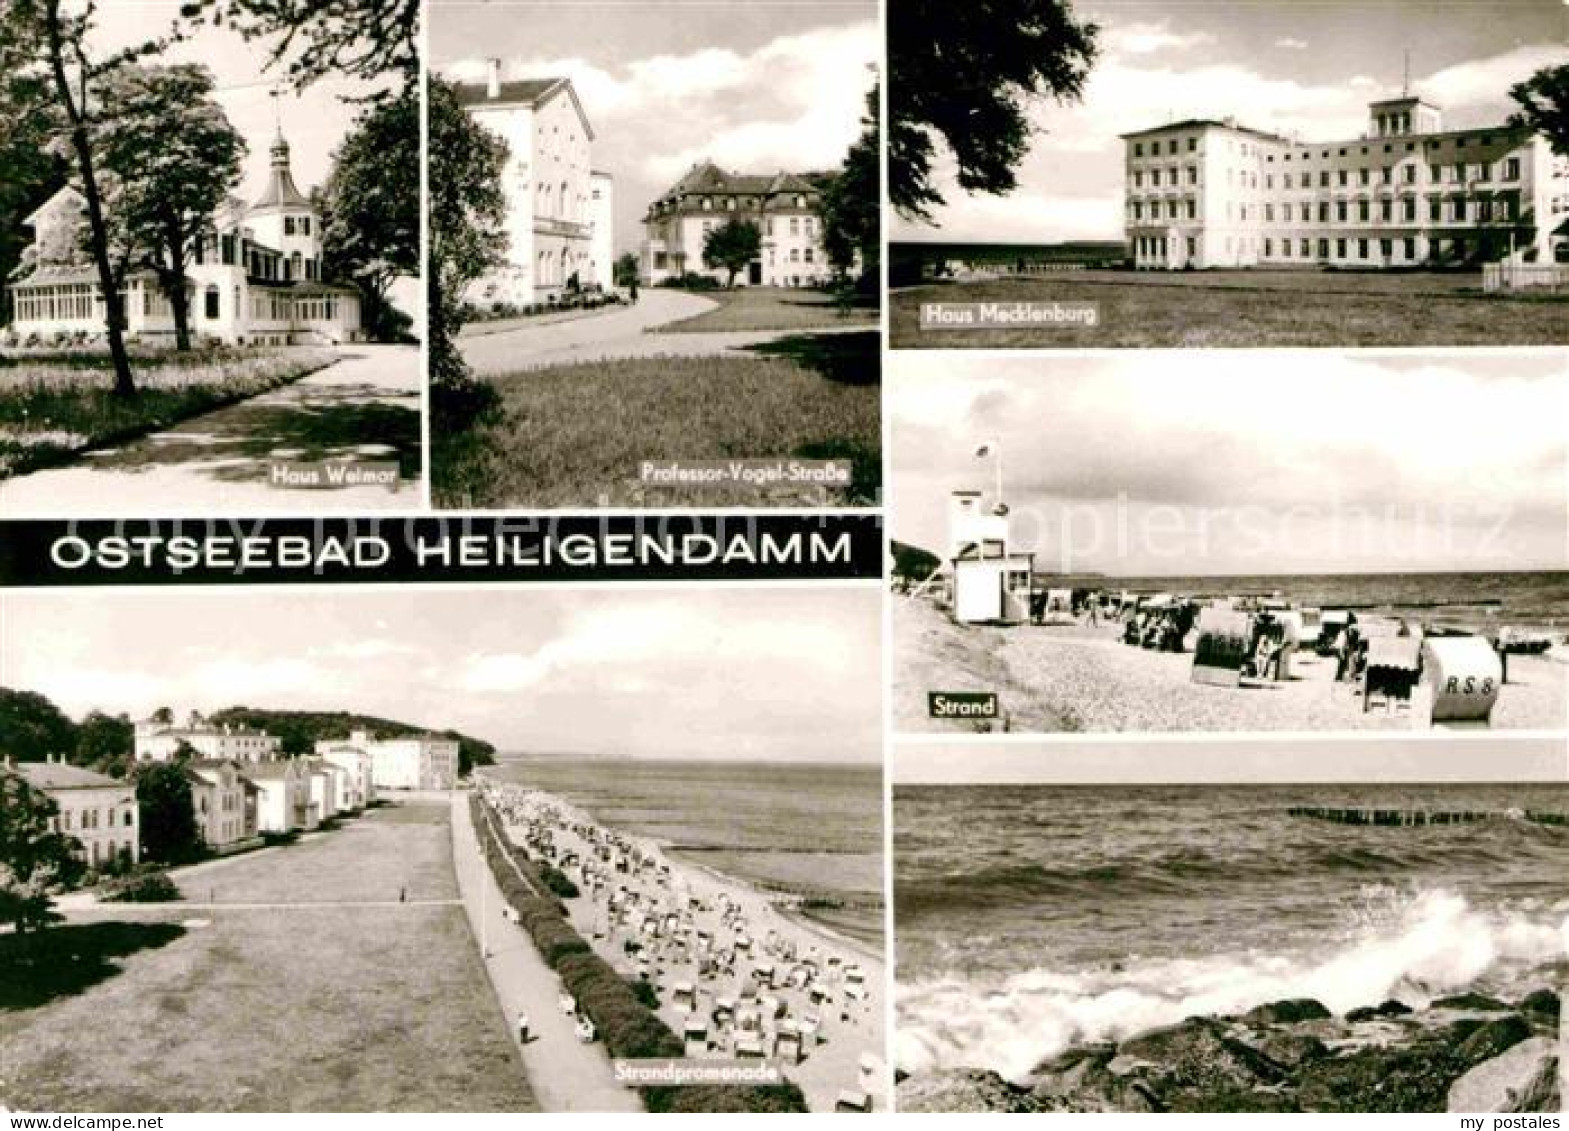 72633783 Heiligendamm Ostseebad Haus Weimar Professor Vogel Strasse Haus Mecklen - Heiligendamm